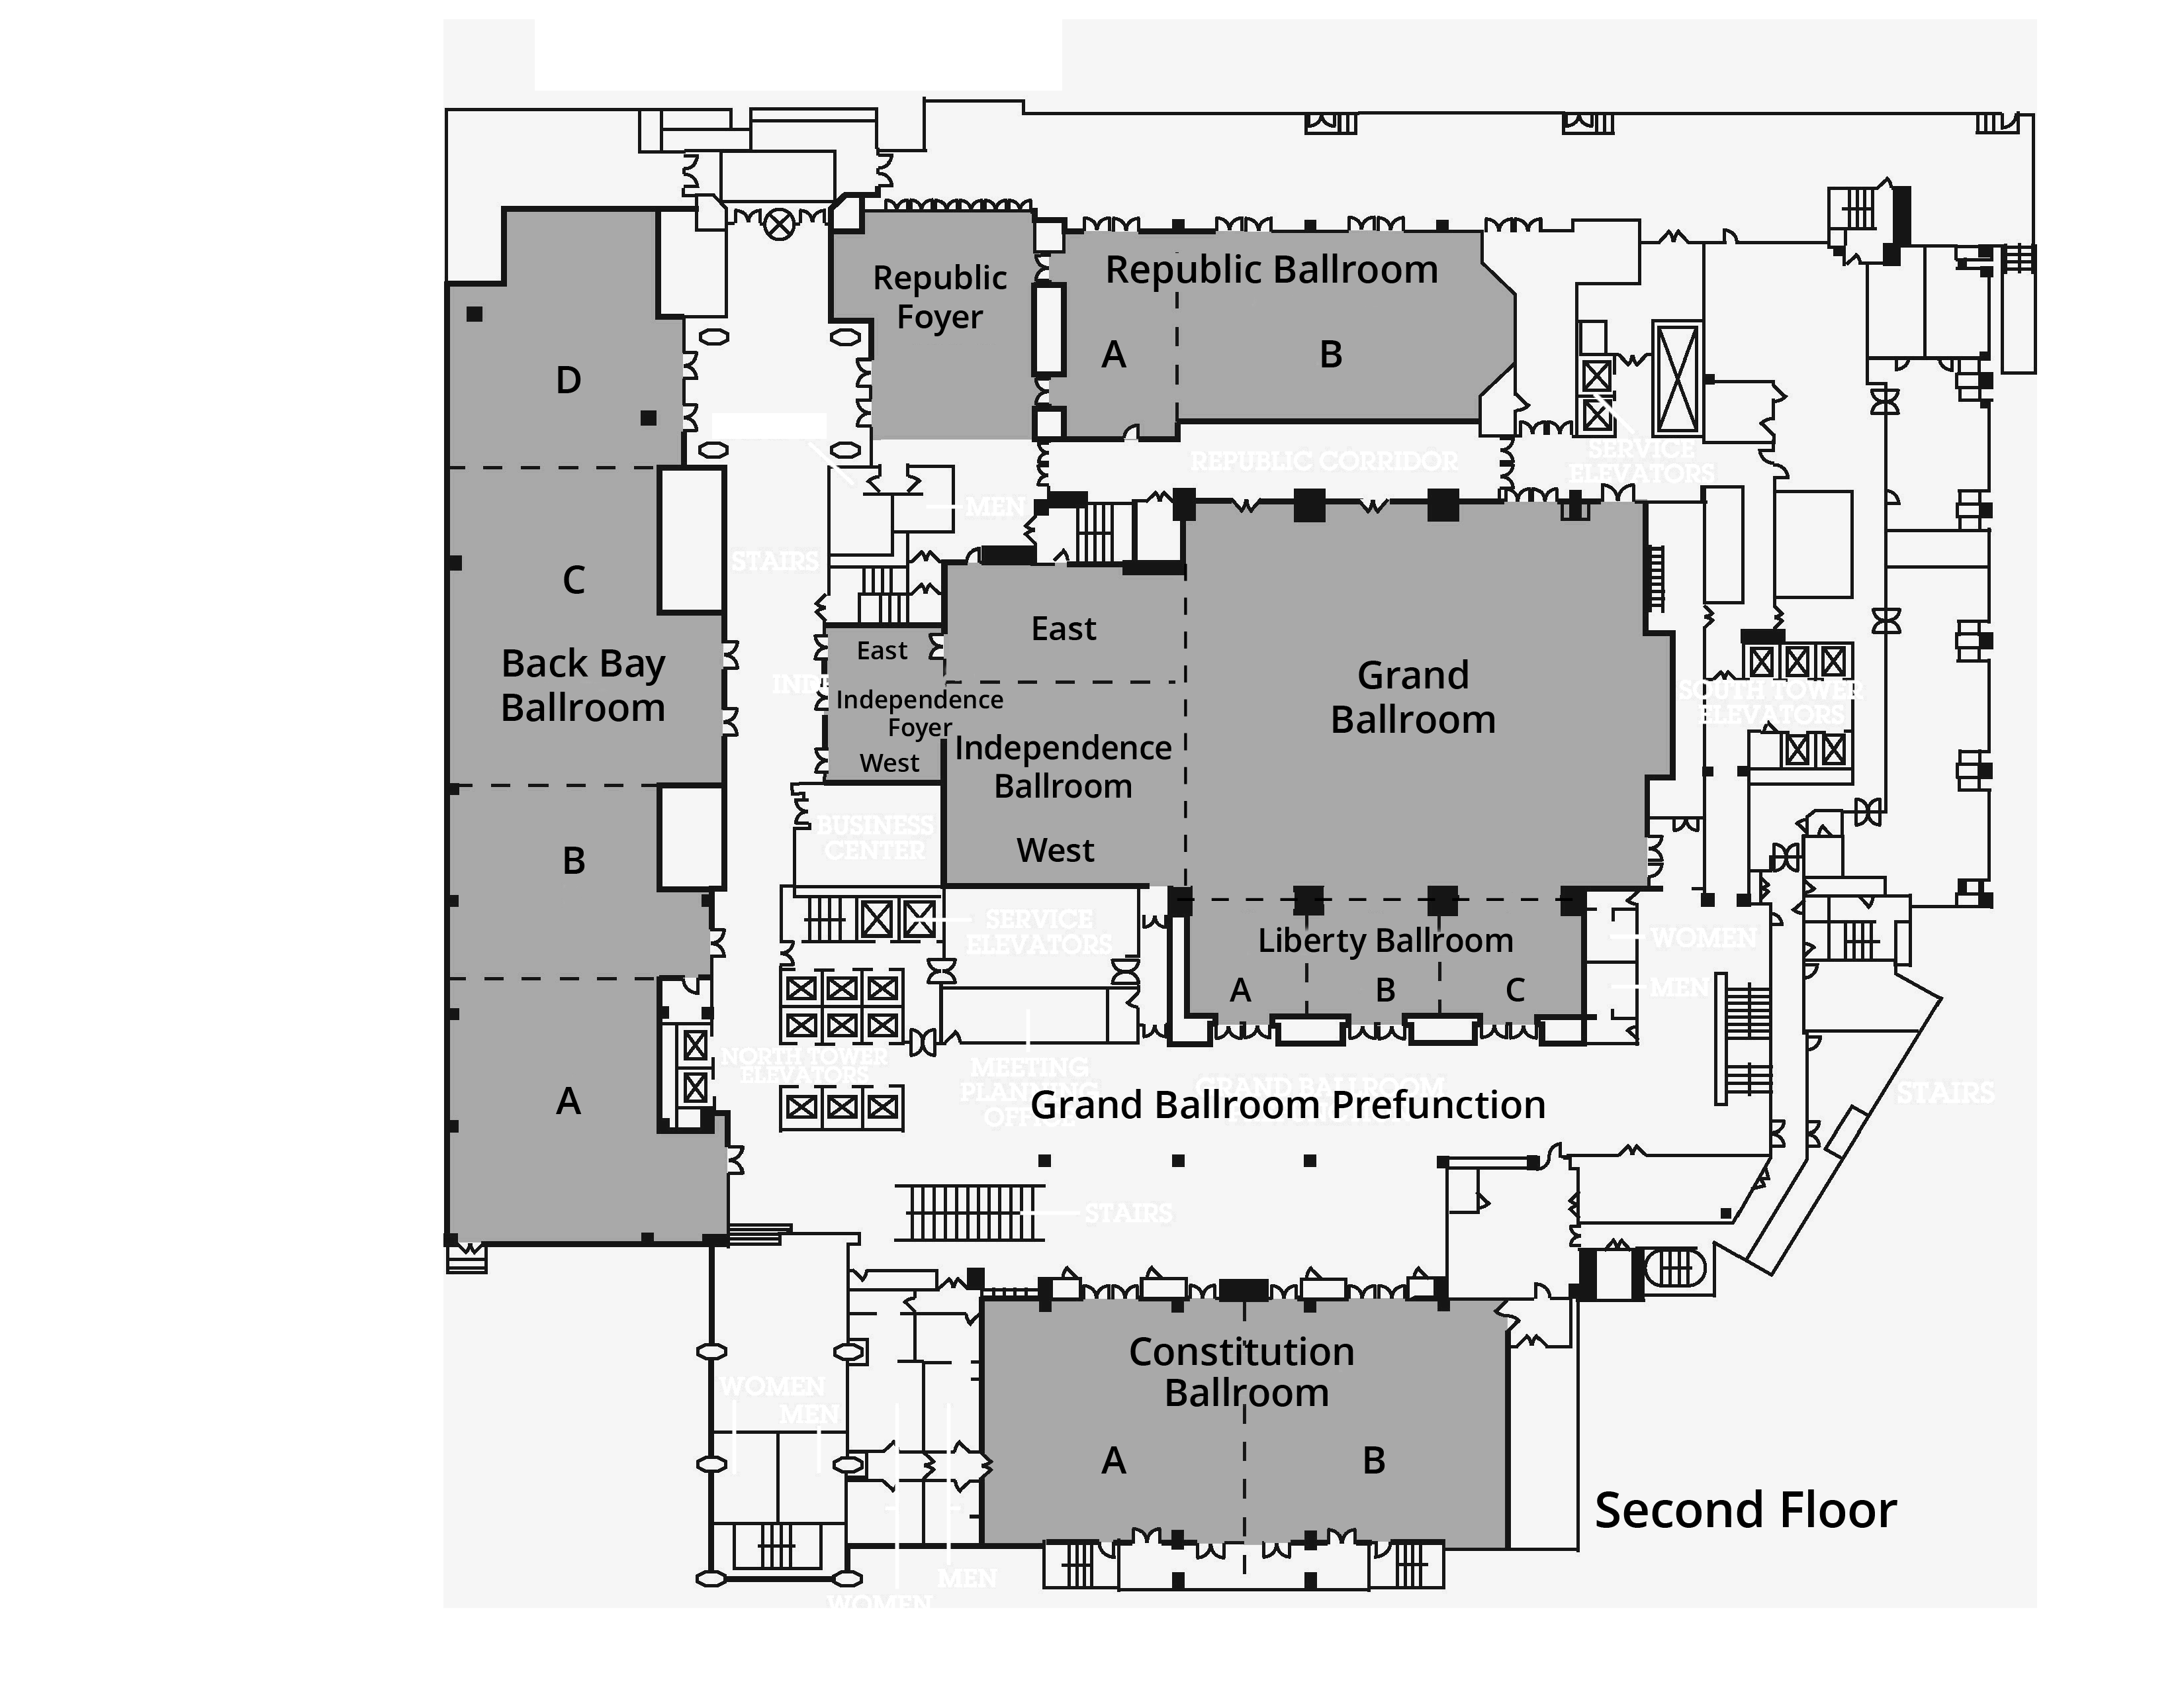 LISA16 Hotel Floor Plans USENIX